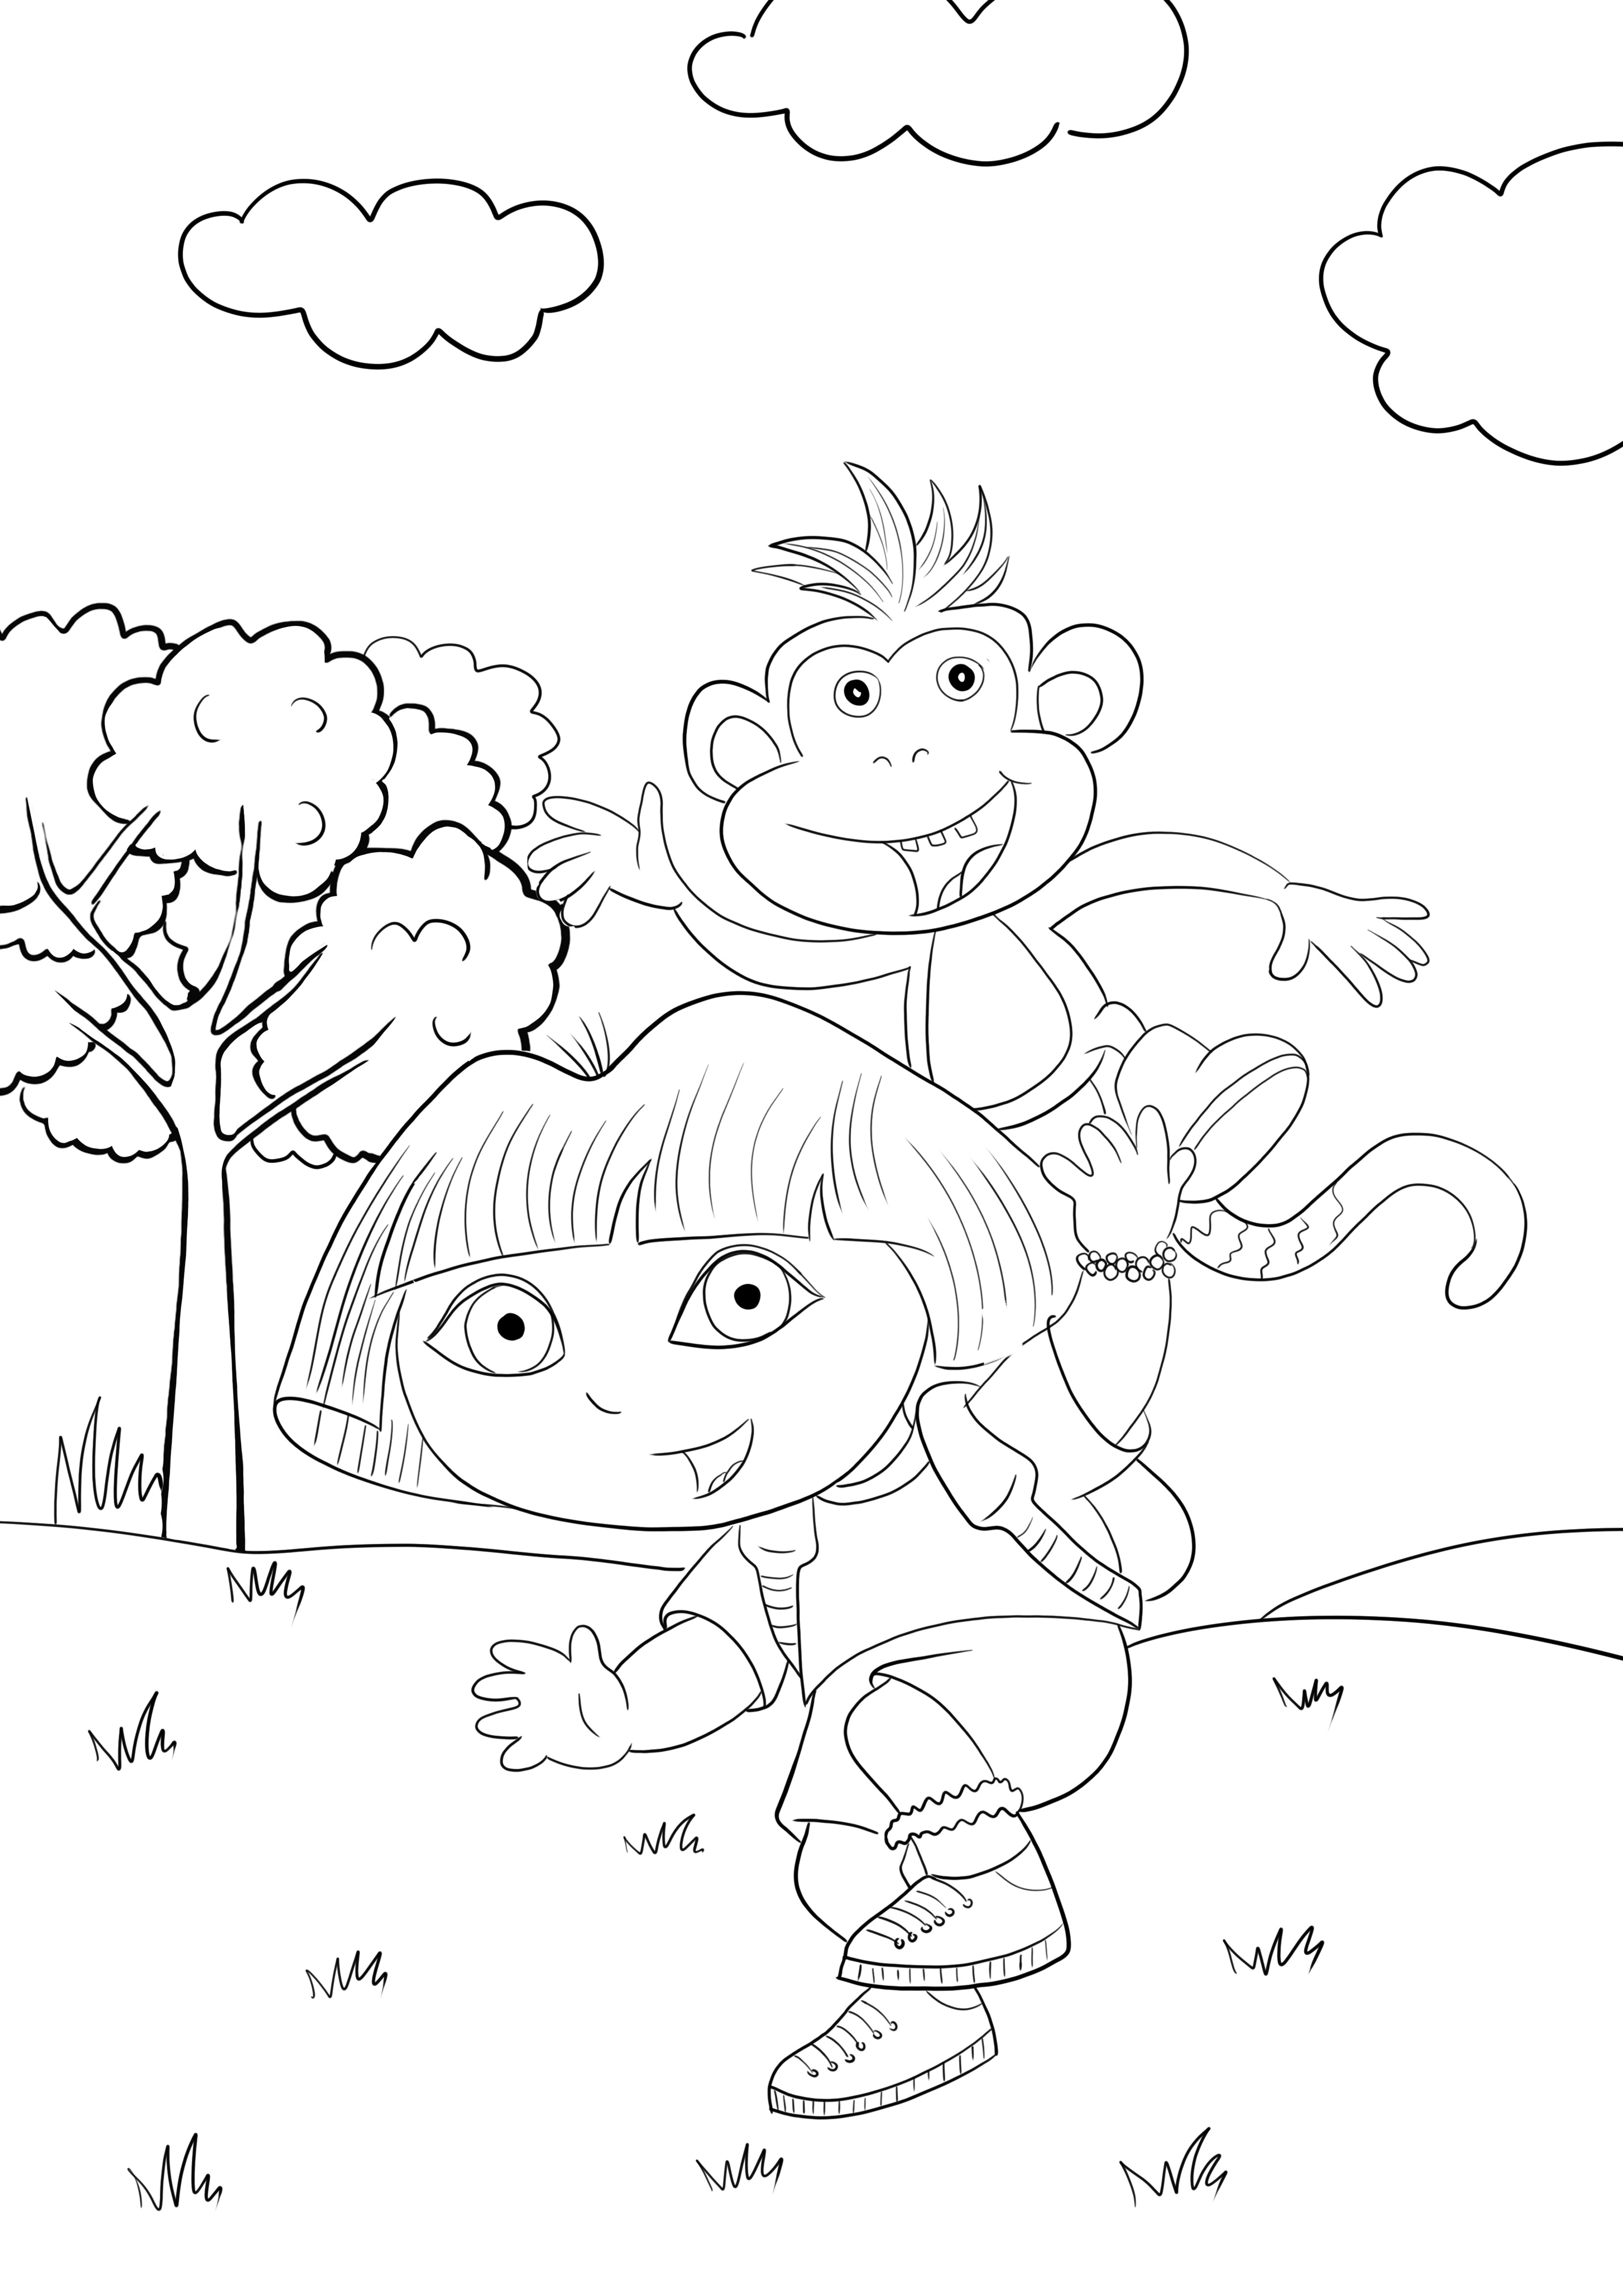 Dora e Benny o macaco grátis para imprimir e colorir imagem